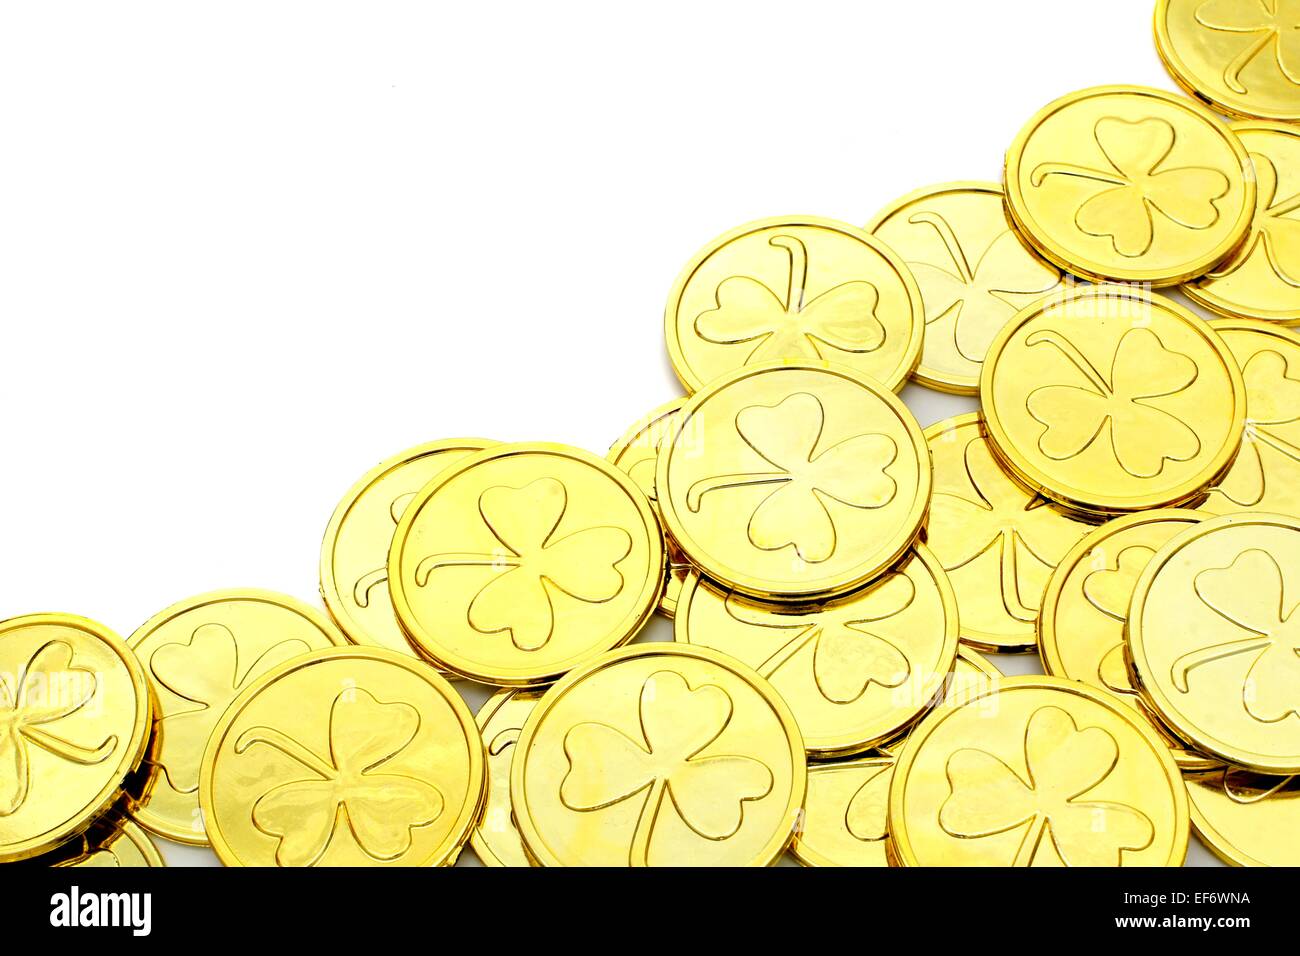 St. Patricks Day Goldmünze Ecke Grenze auf einem weißen Hintergrund Stockfoto